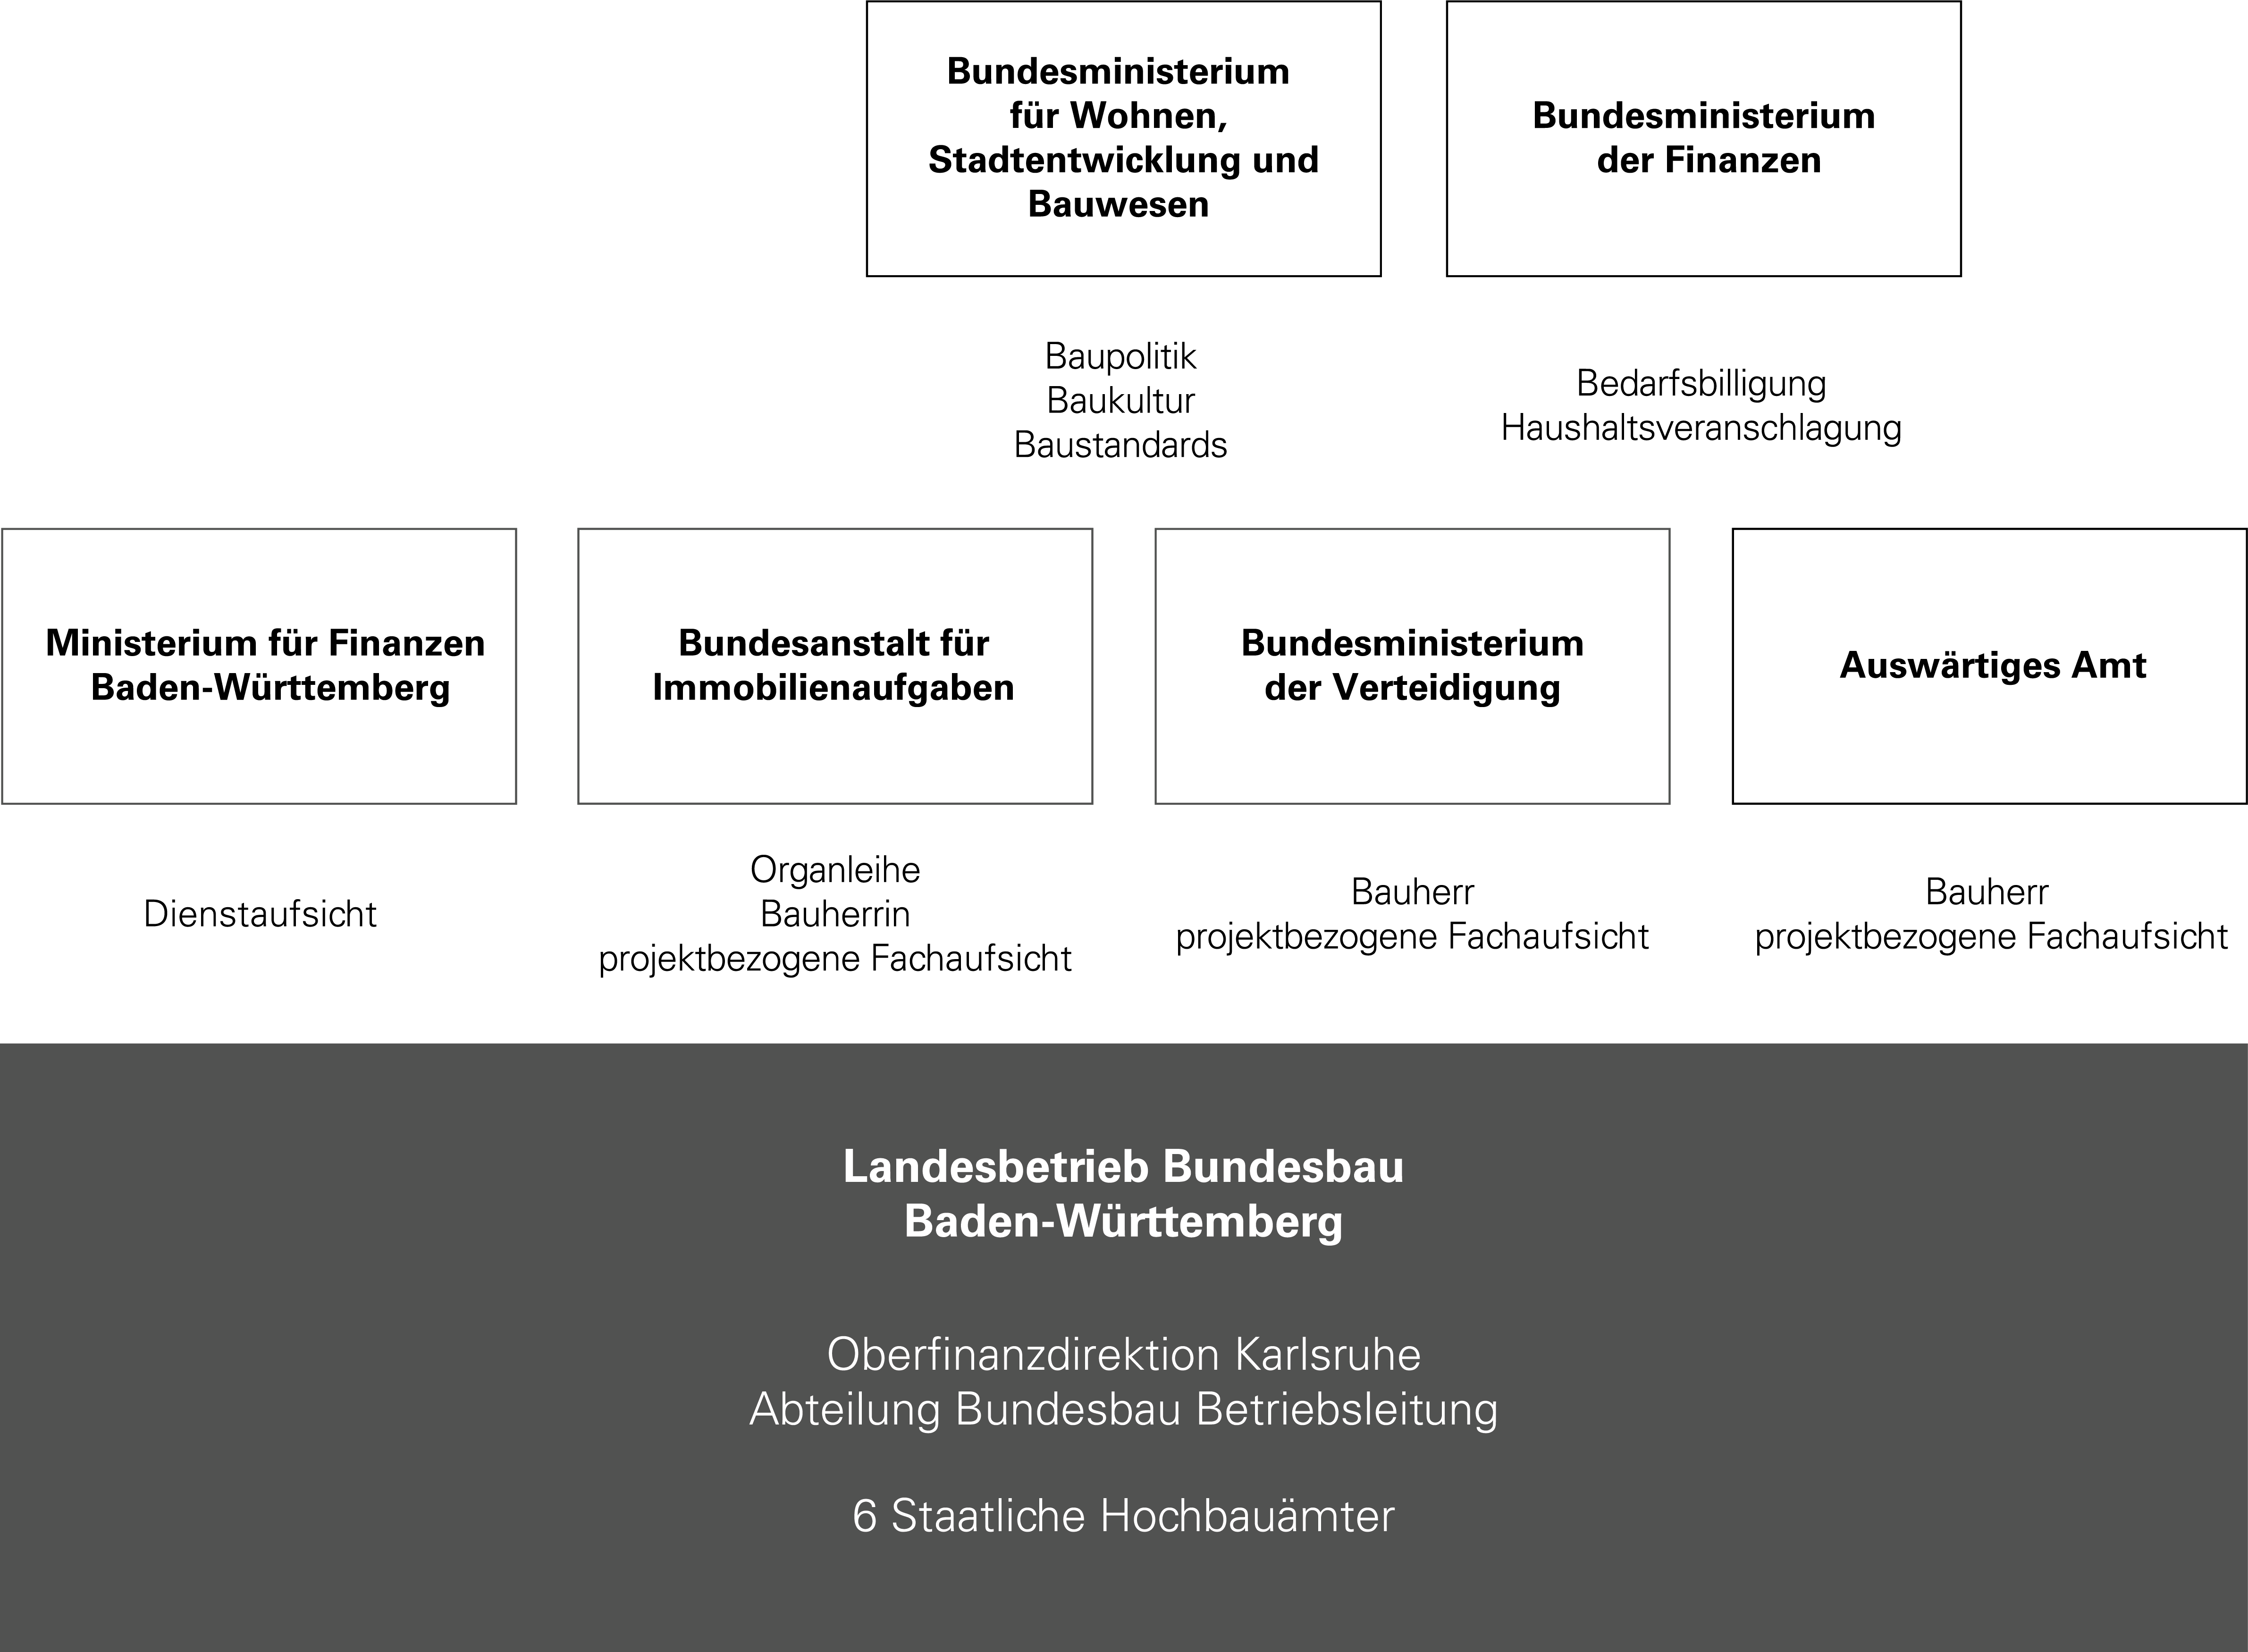 grafische Darstellung der Organisation des Landesbetriebs Bundesbau Baden-Württemberg